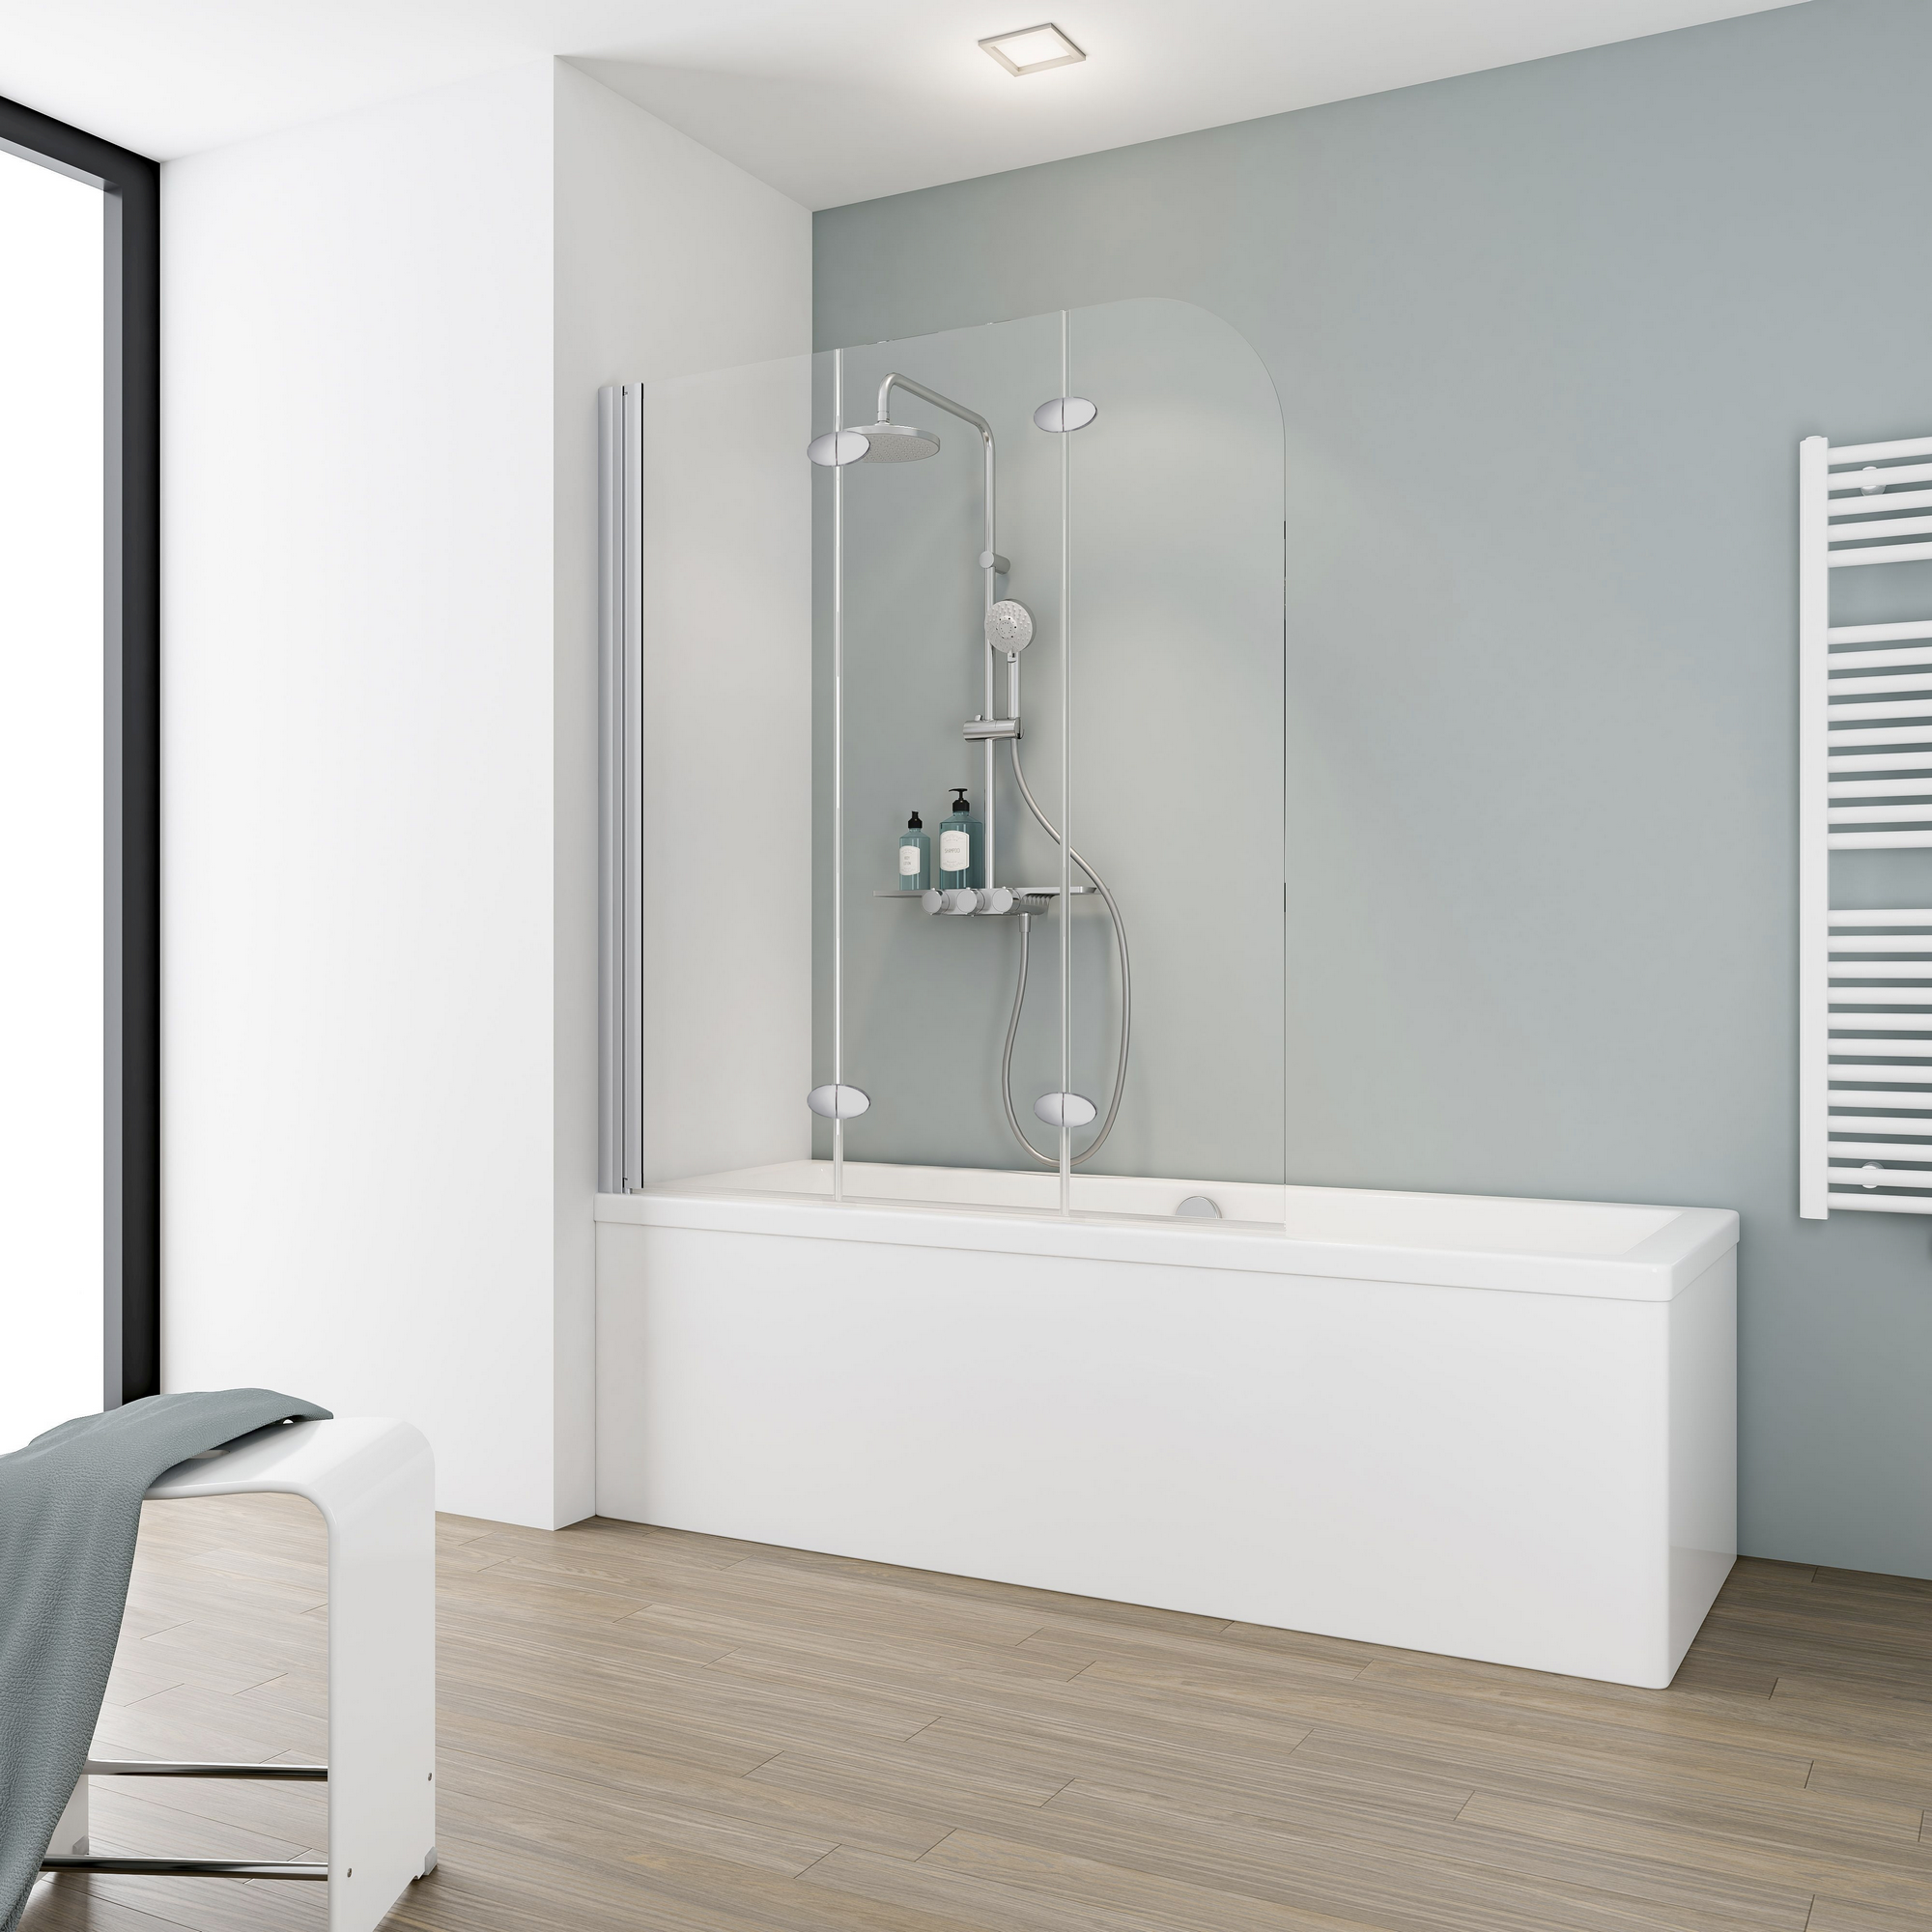 Badewannenfaltwand 'Komfort' teilgerahmt, aluminiumfarben, 125 x 140 cm, 3-teilig + product picture